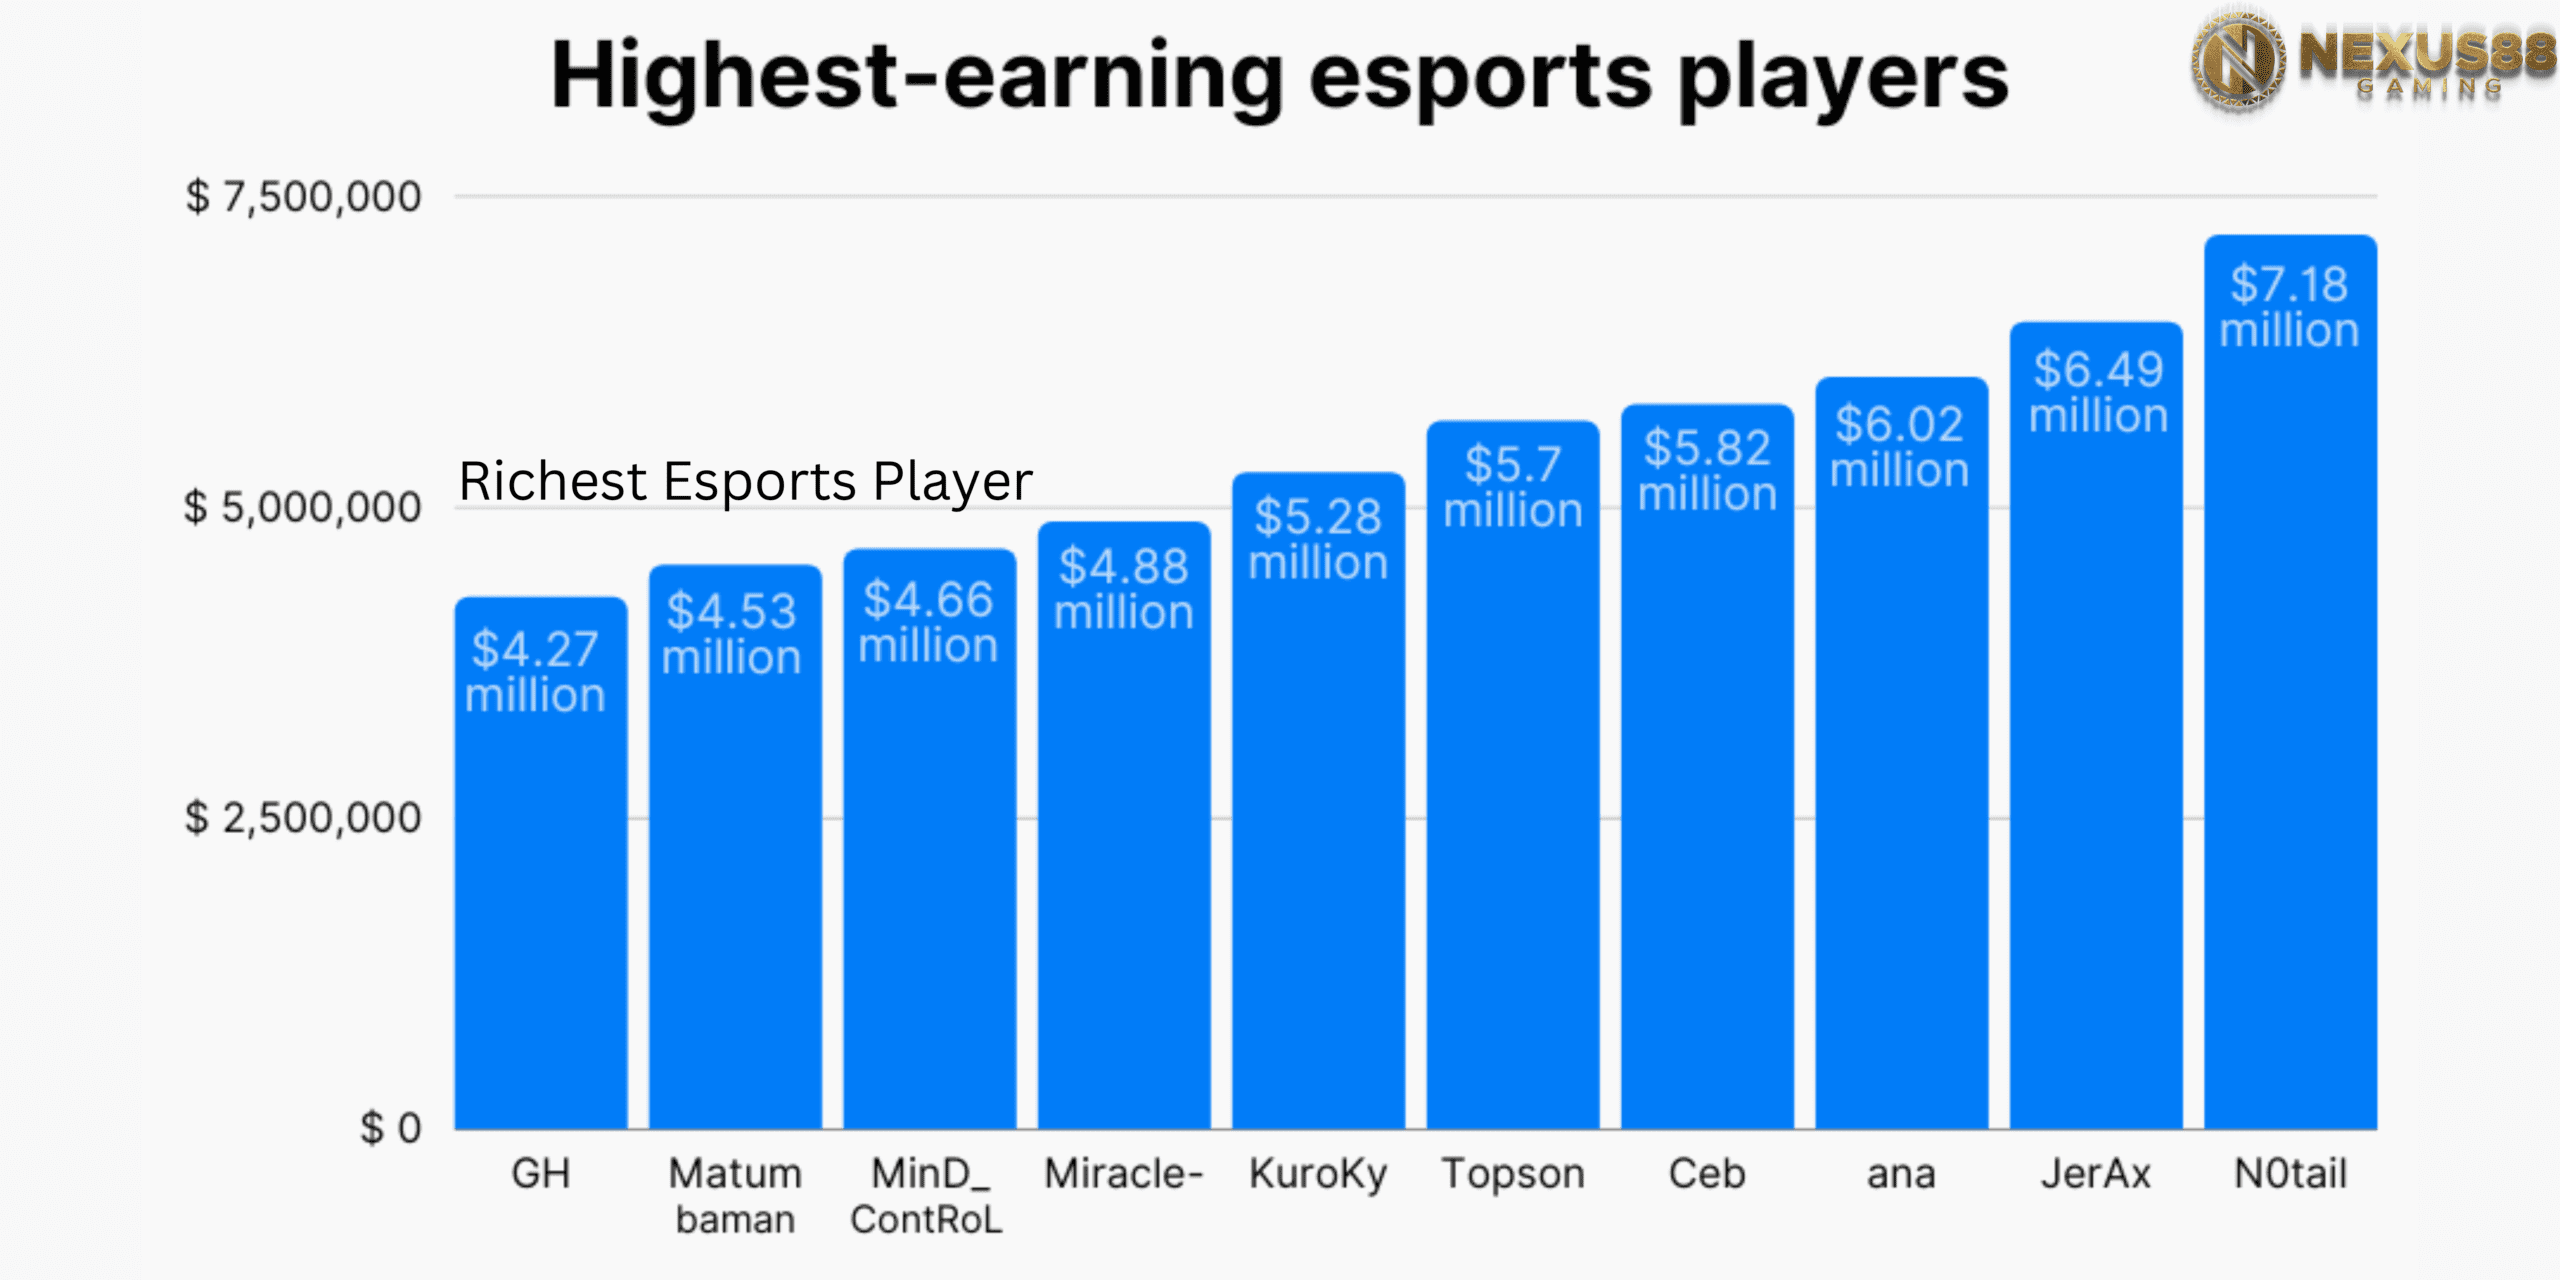 Richest Esports Player